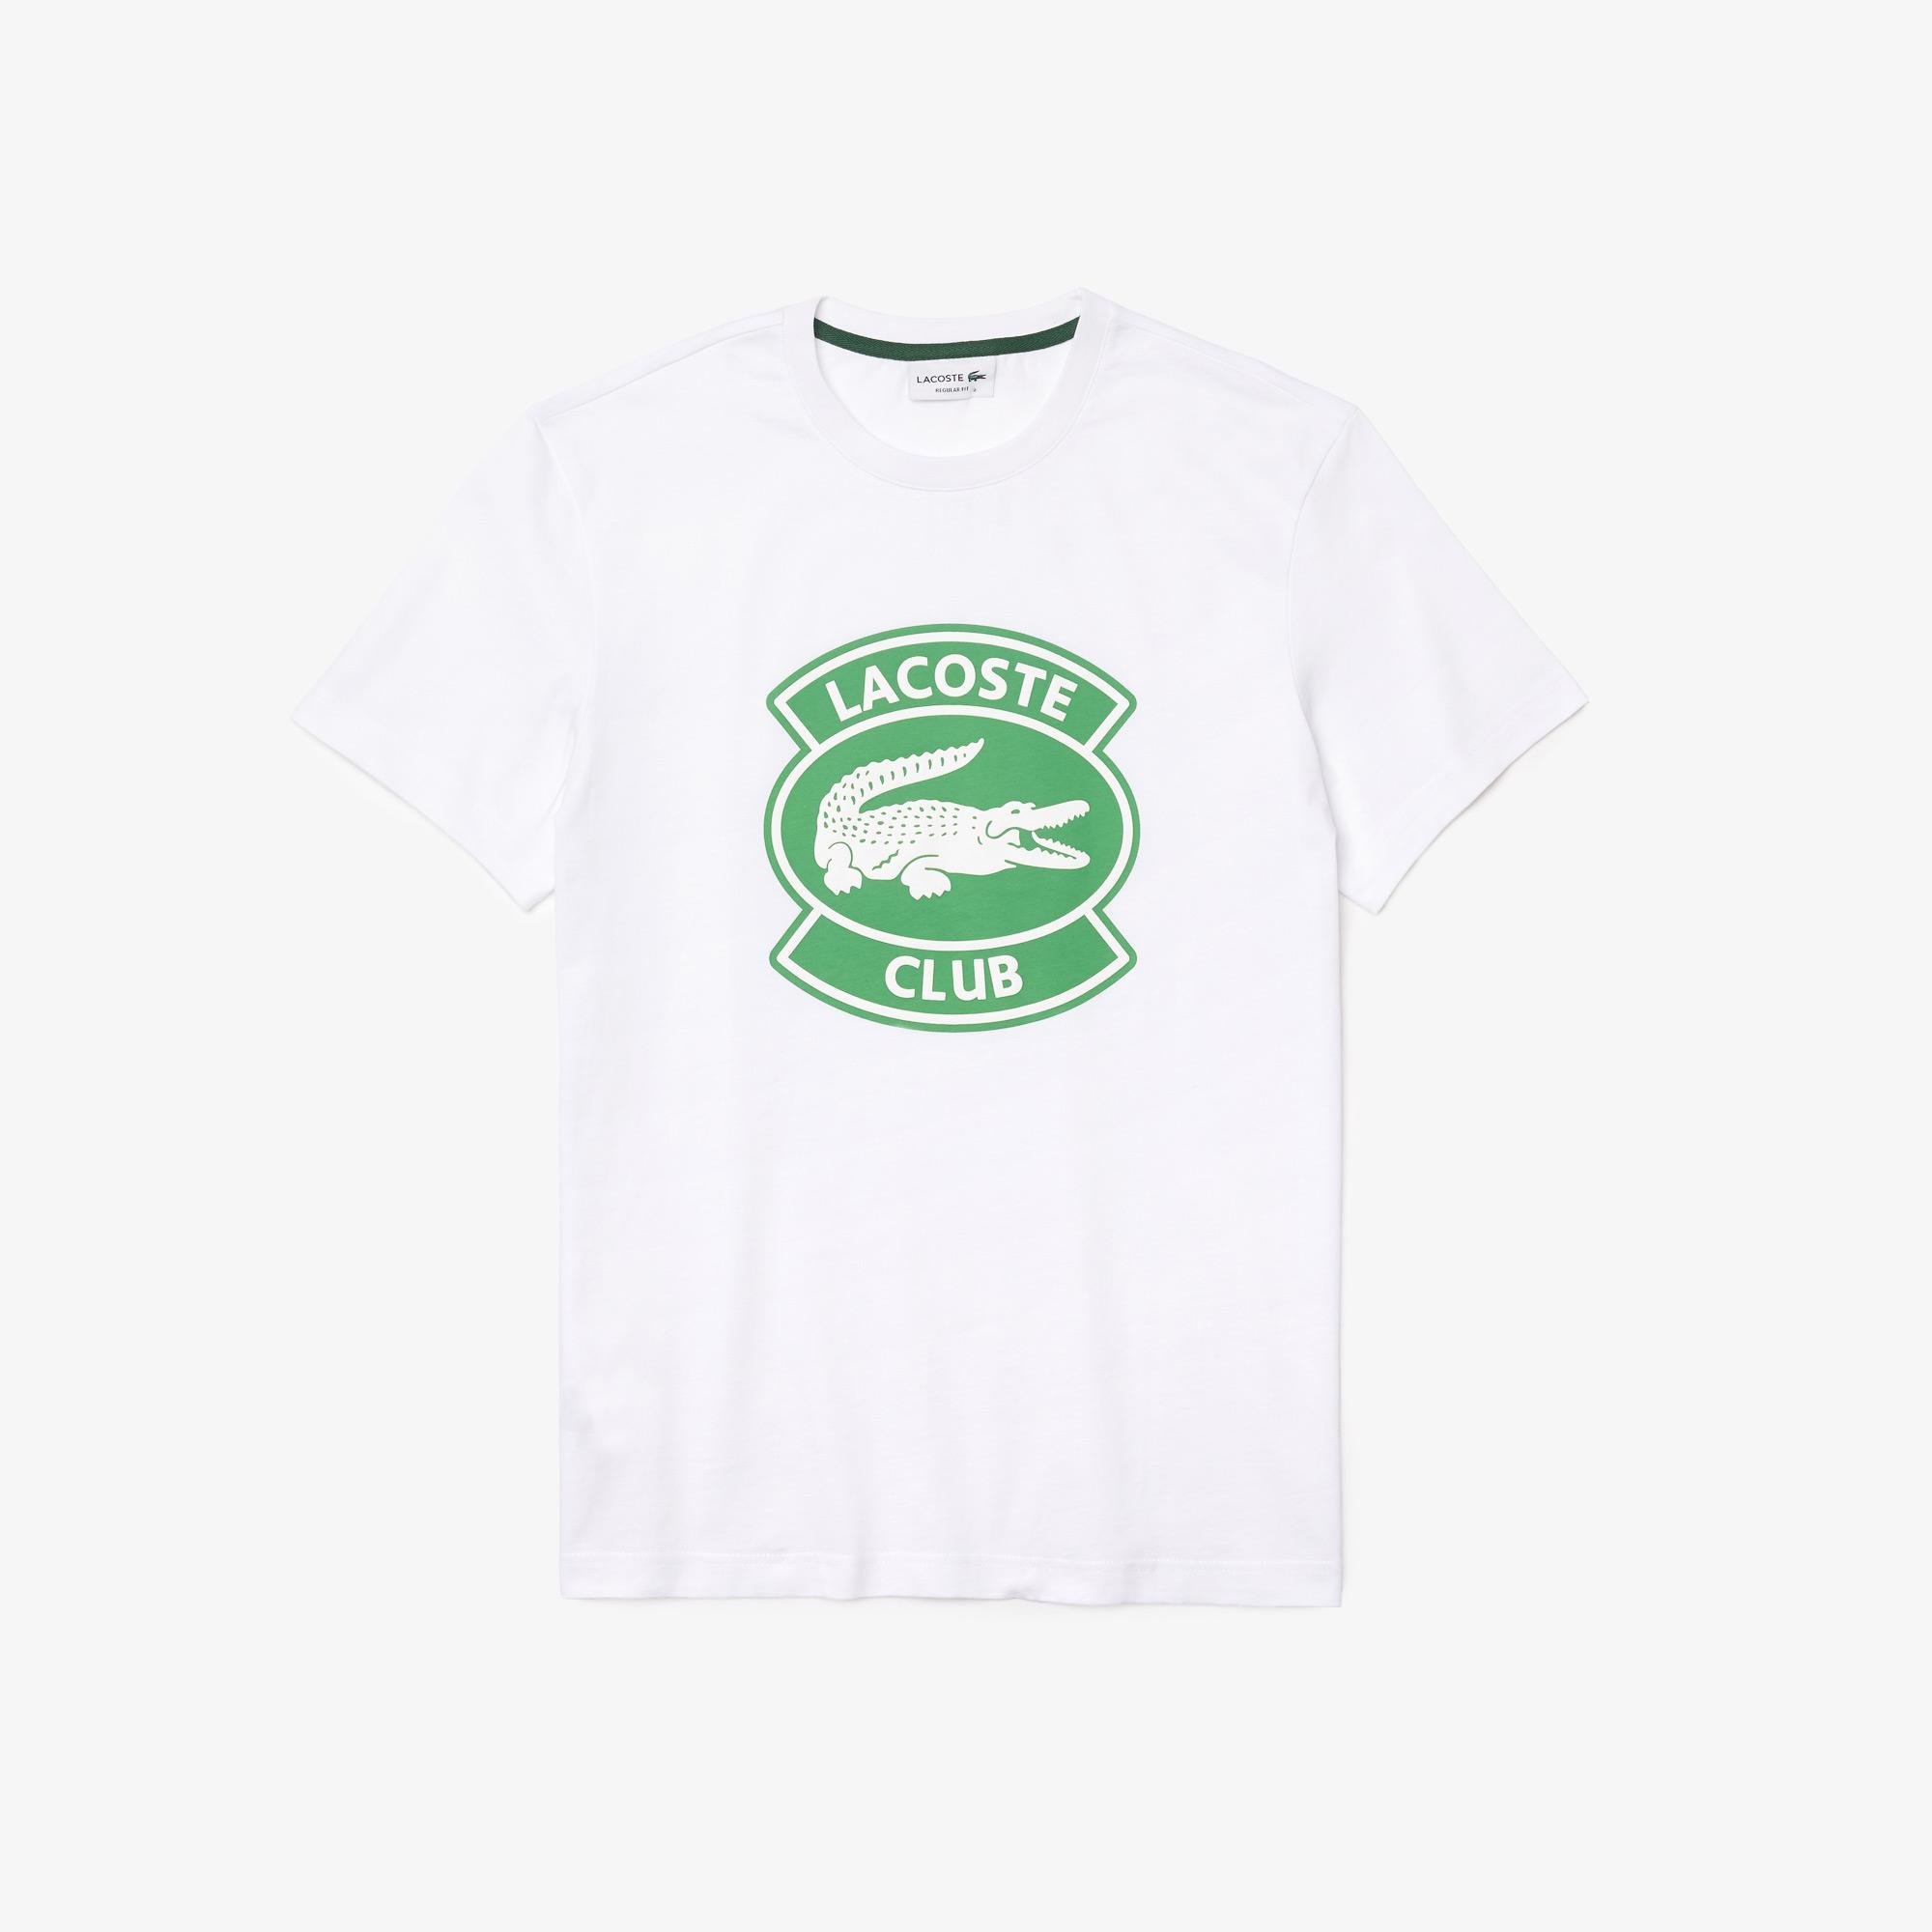 Lacoste Męski bawełniany T-shirt z okrągłym dekoltem i dużą naszywką Lacoste Club